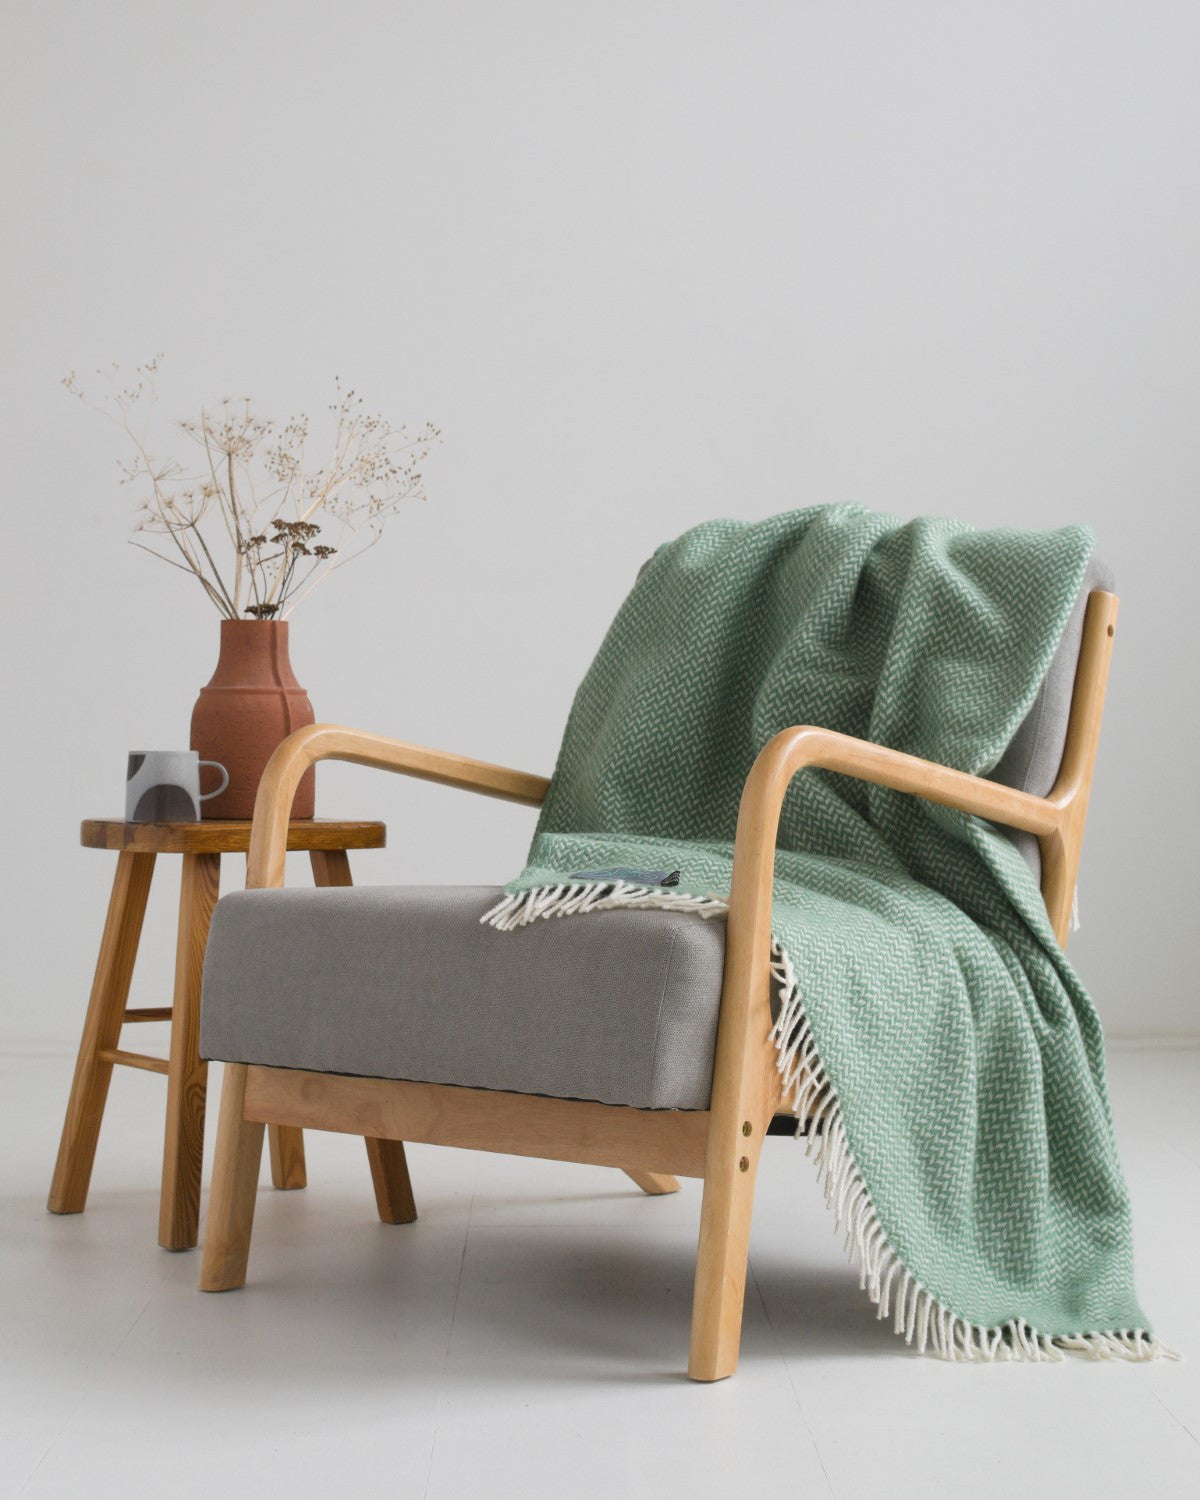 Large green herringbone wool blanket draped over a lounge chair